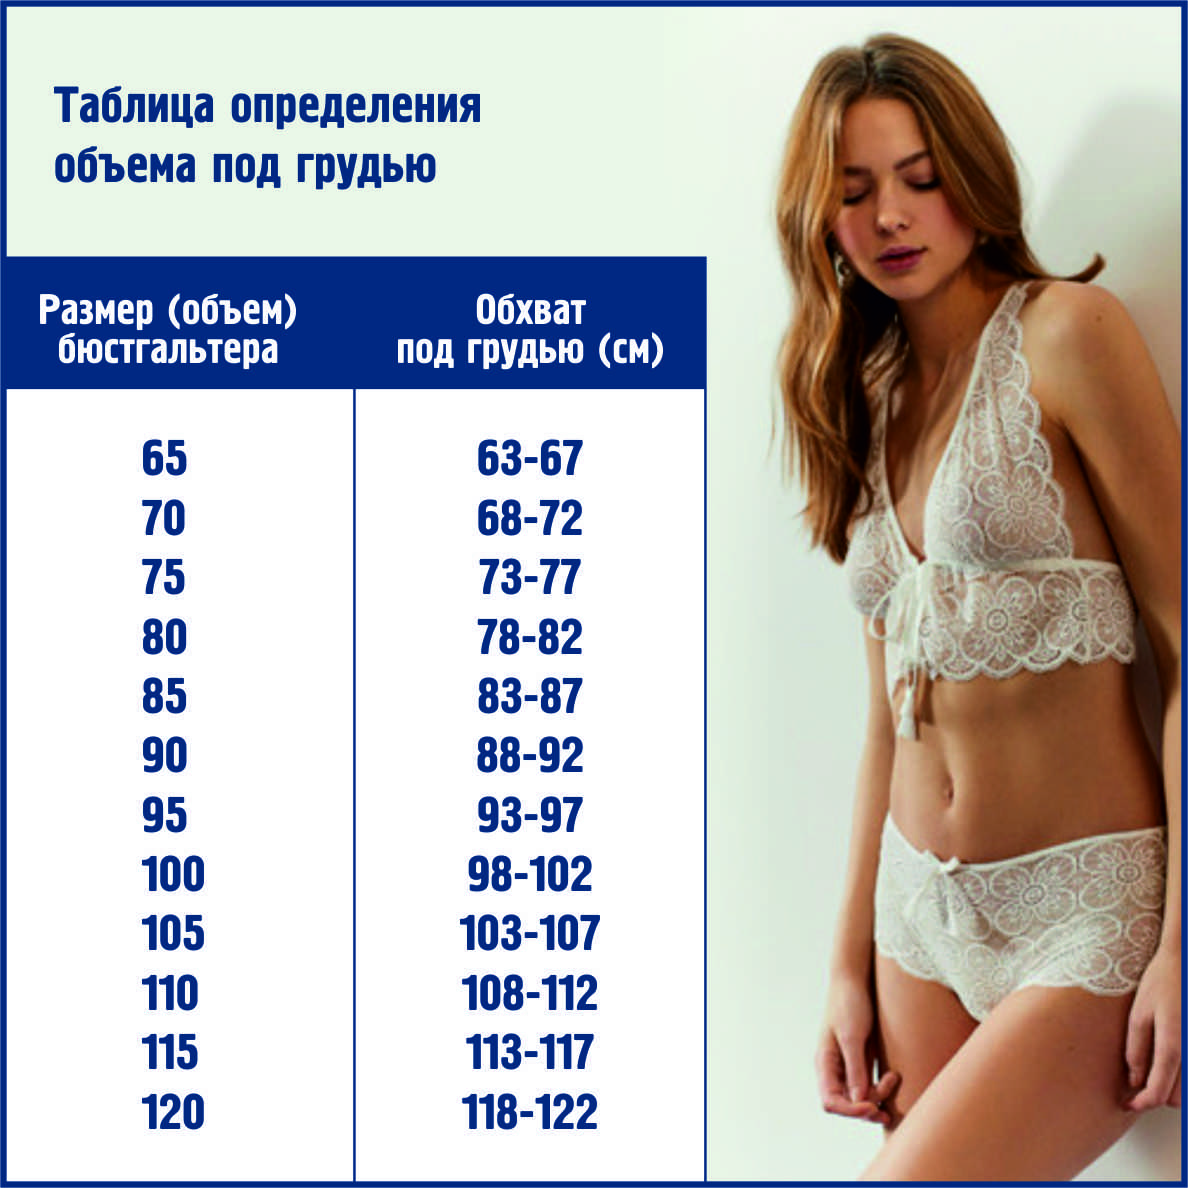 как измерить объем груди у женщин фото 118